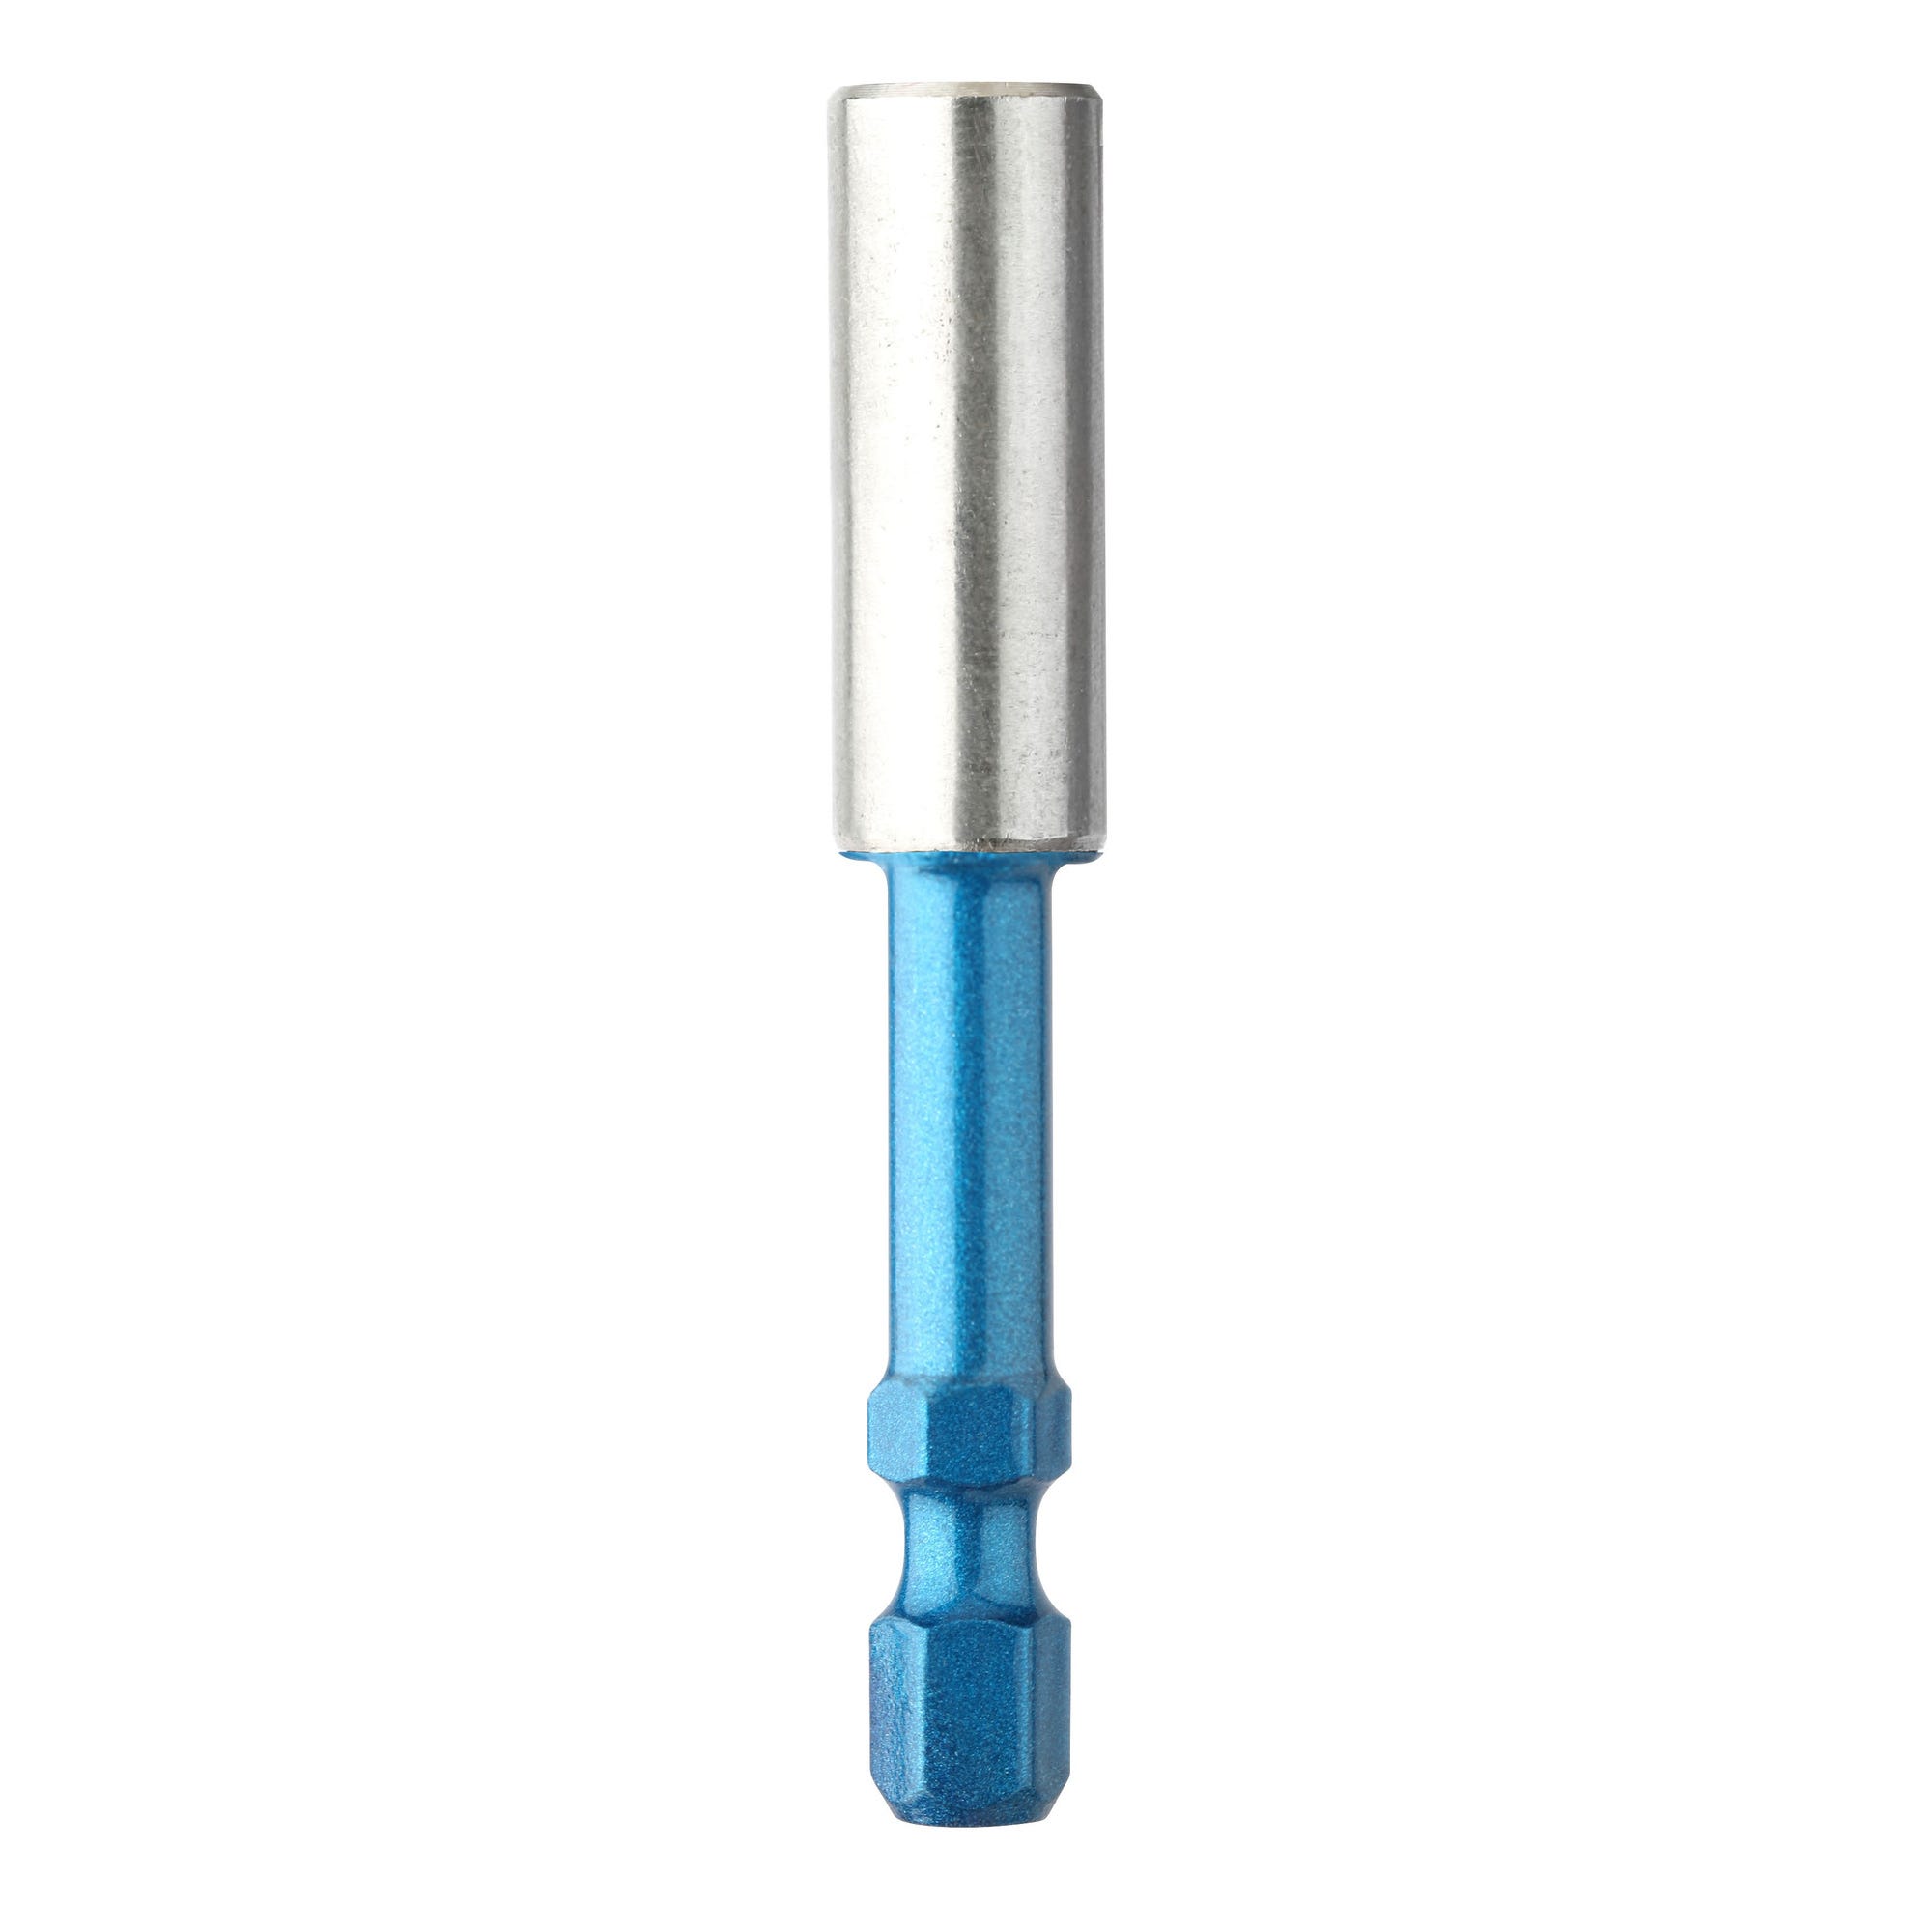 Porte embout blue-shock 60 mm spécial visseuse à choc et visseuse puissante - U621B DIAGER 0